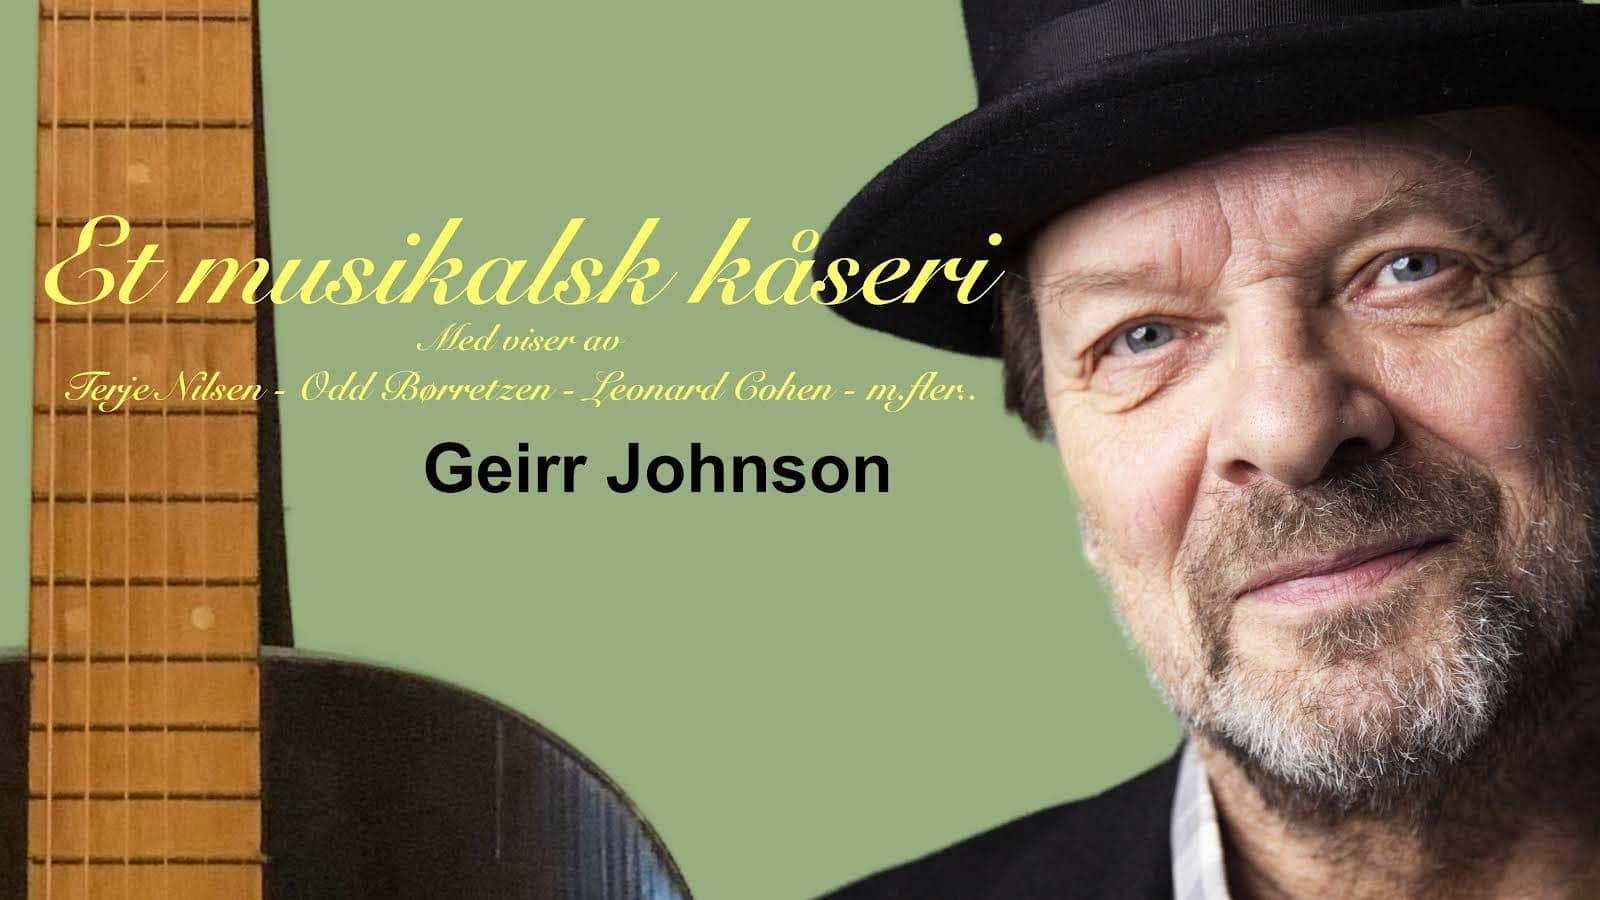 Musikalsk kåseri med Geirr Johnson lørdag 20. april